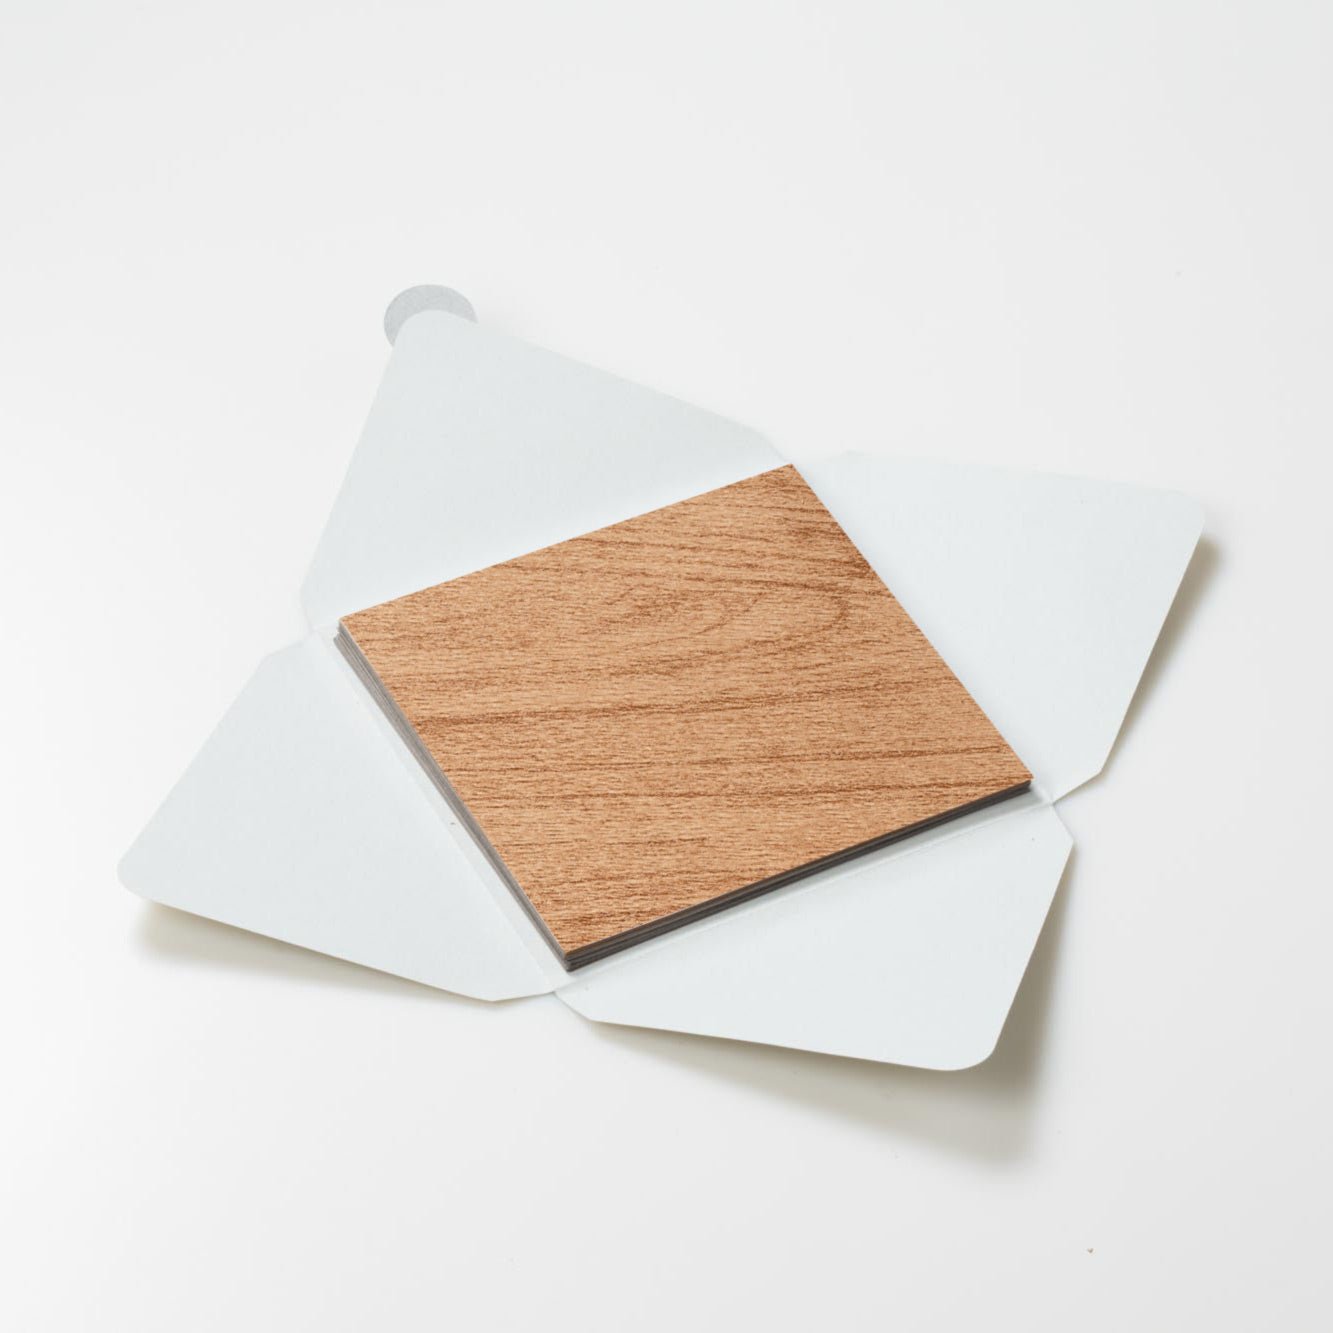 Kit di fogli "Legno Avana venature Calde" formato origami 15 cm x 15 cm - Manamant Paper Tales -FGA2260CXM2D